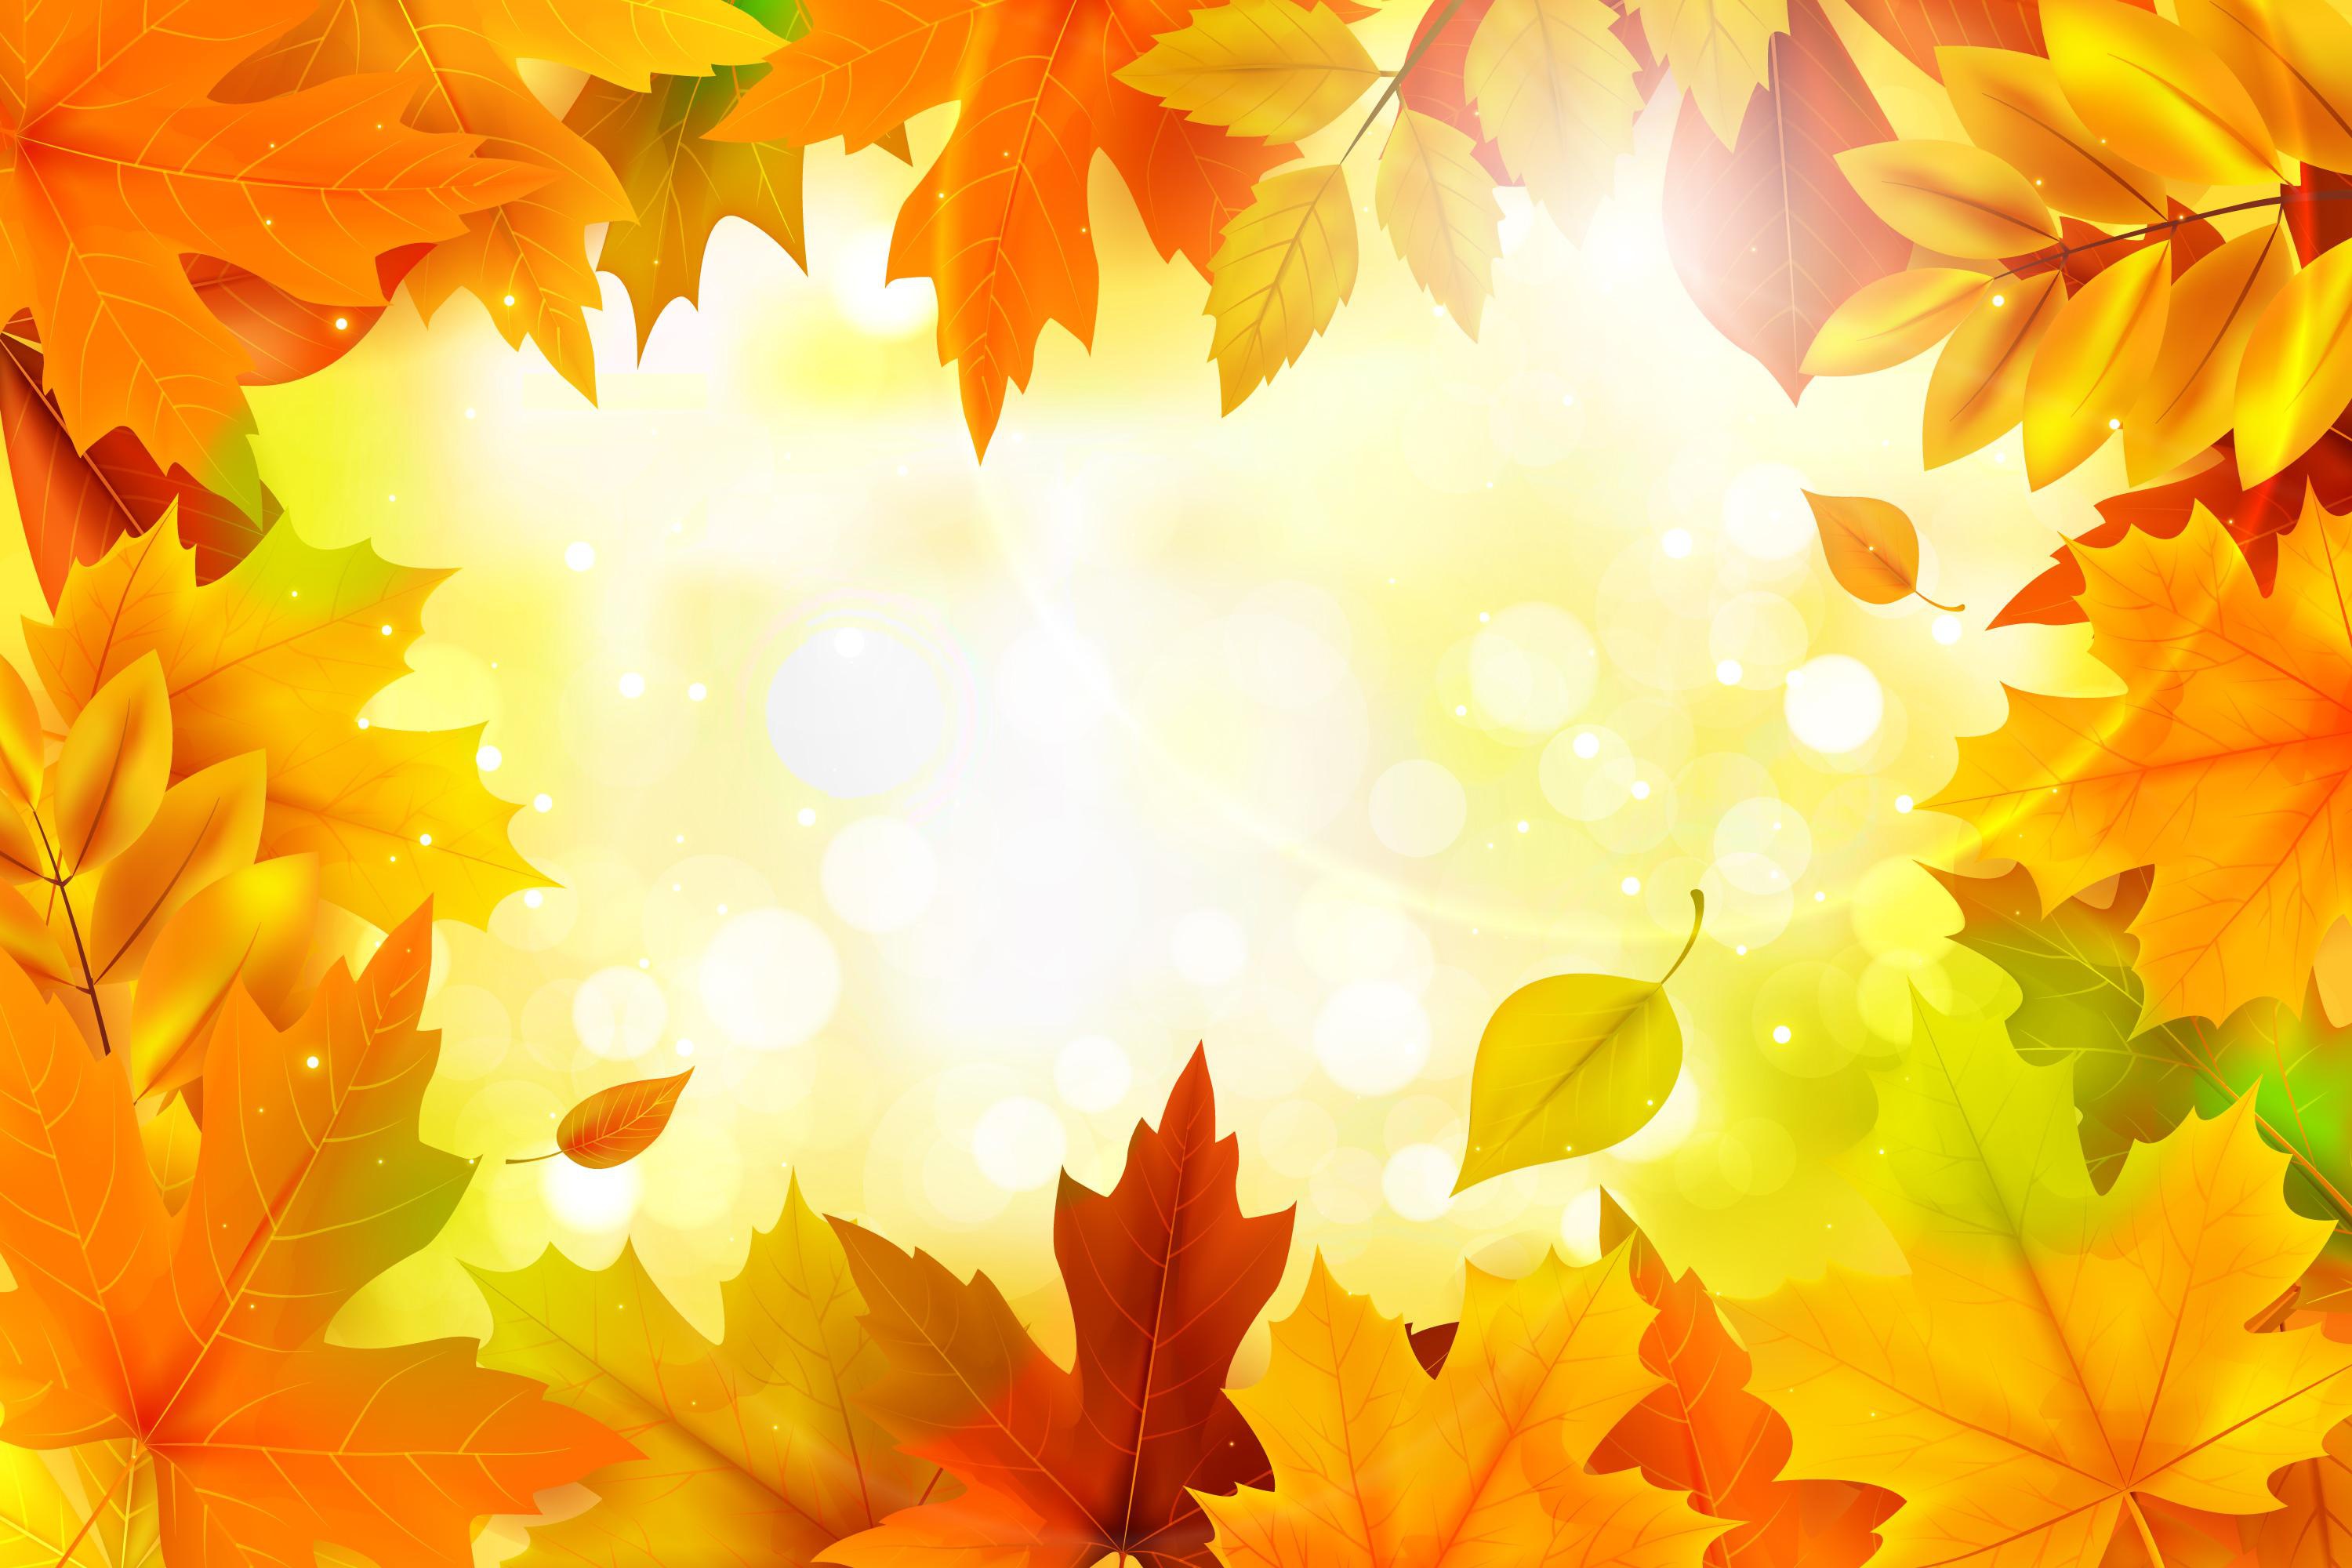 Скачать обои бесплатно Осень, Лист, Кленовый Лист, Художественные картинка на рабочий стол ПК